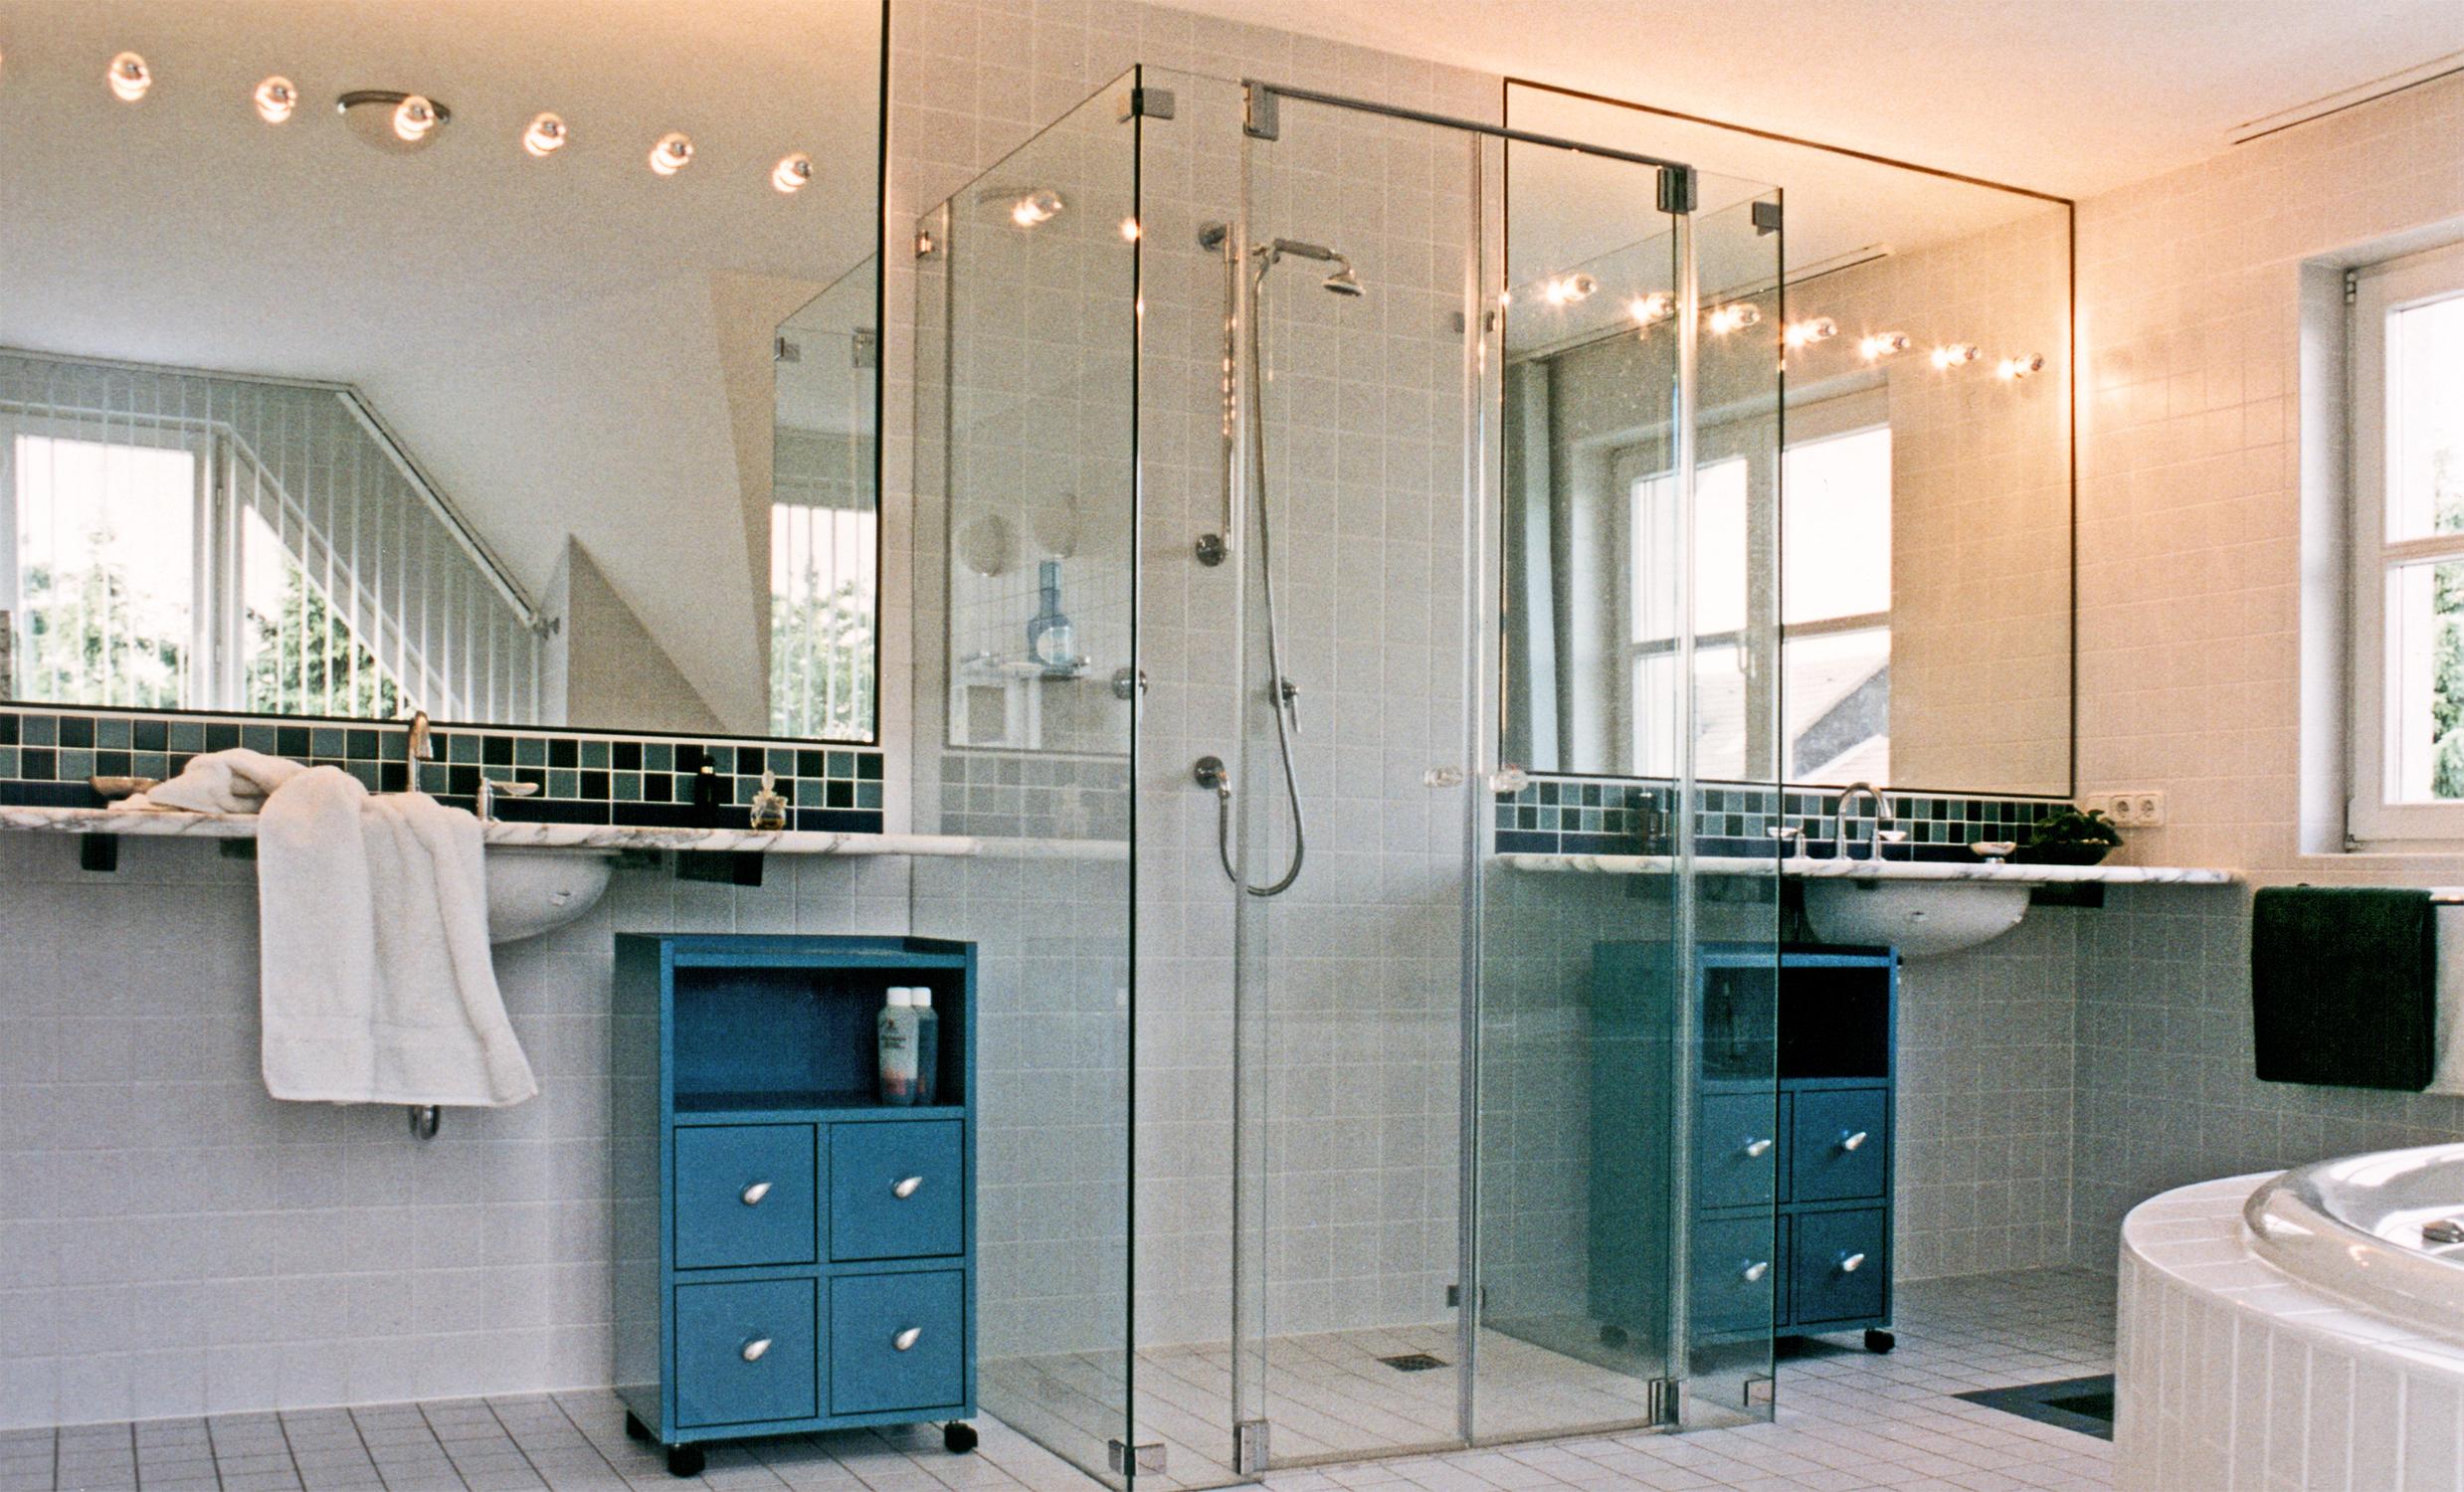 Doppelter Waschtisch mit Dusche #bad #badezimmer #dusche #spiegel #waschtisch #kommode #badsanierung ©Werner Dielen